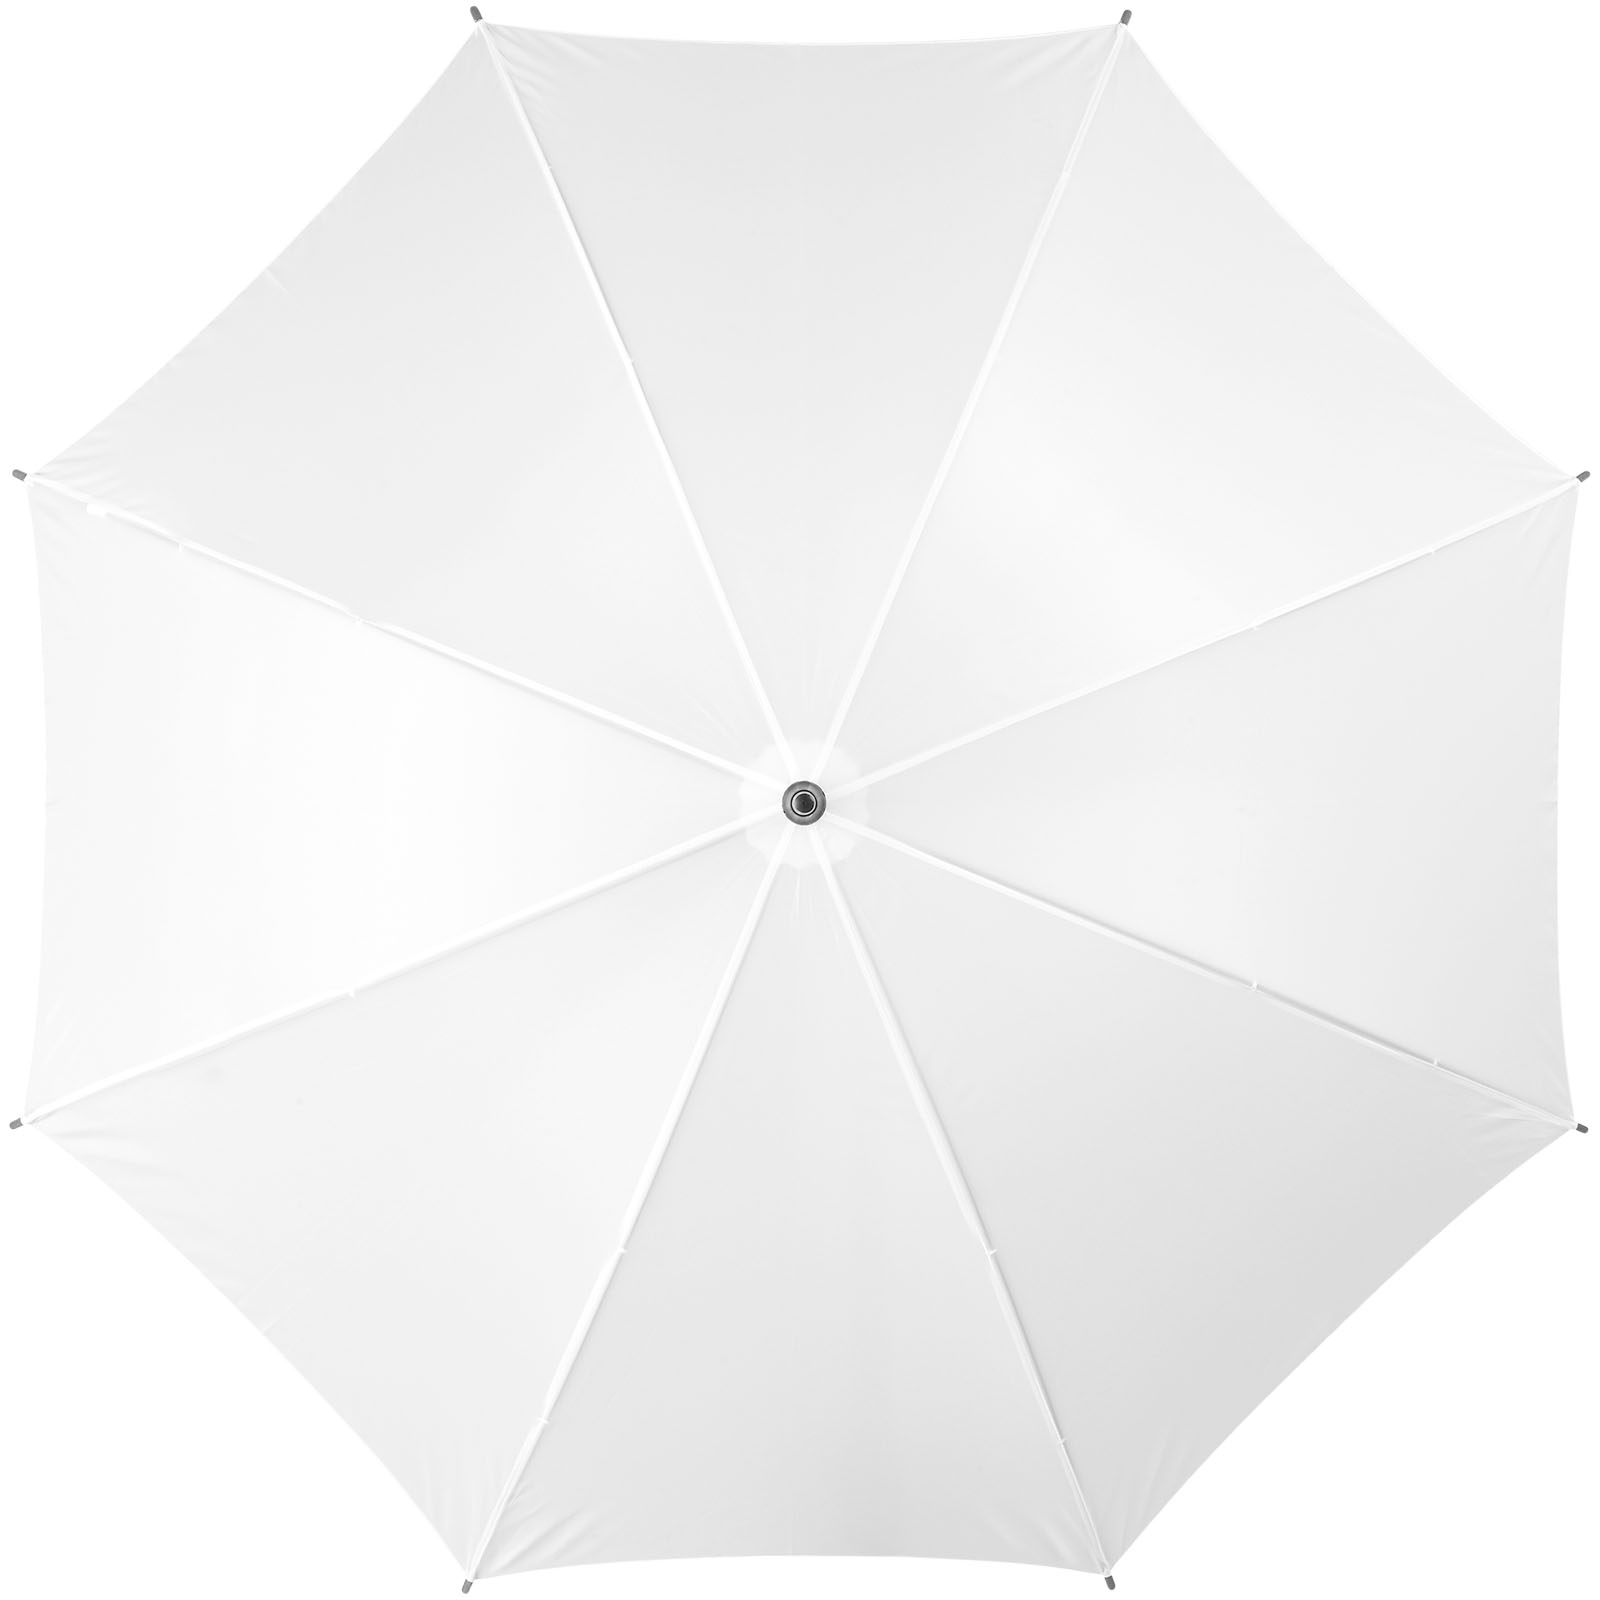 Advertising Standard Umbrellas - Jova 23